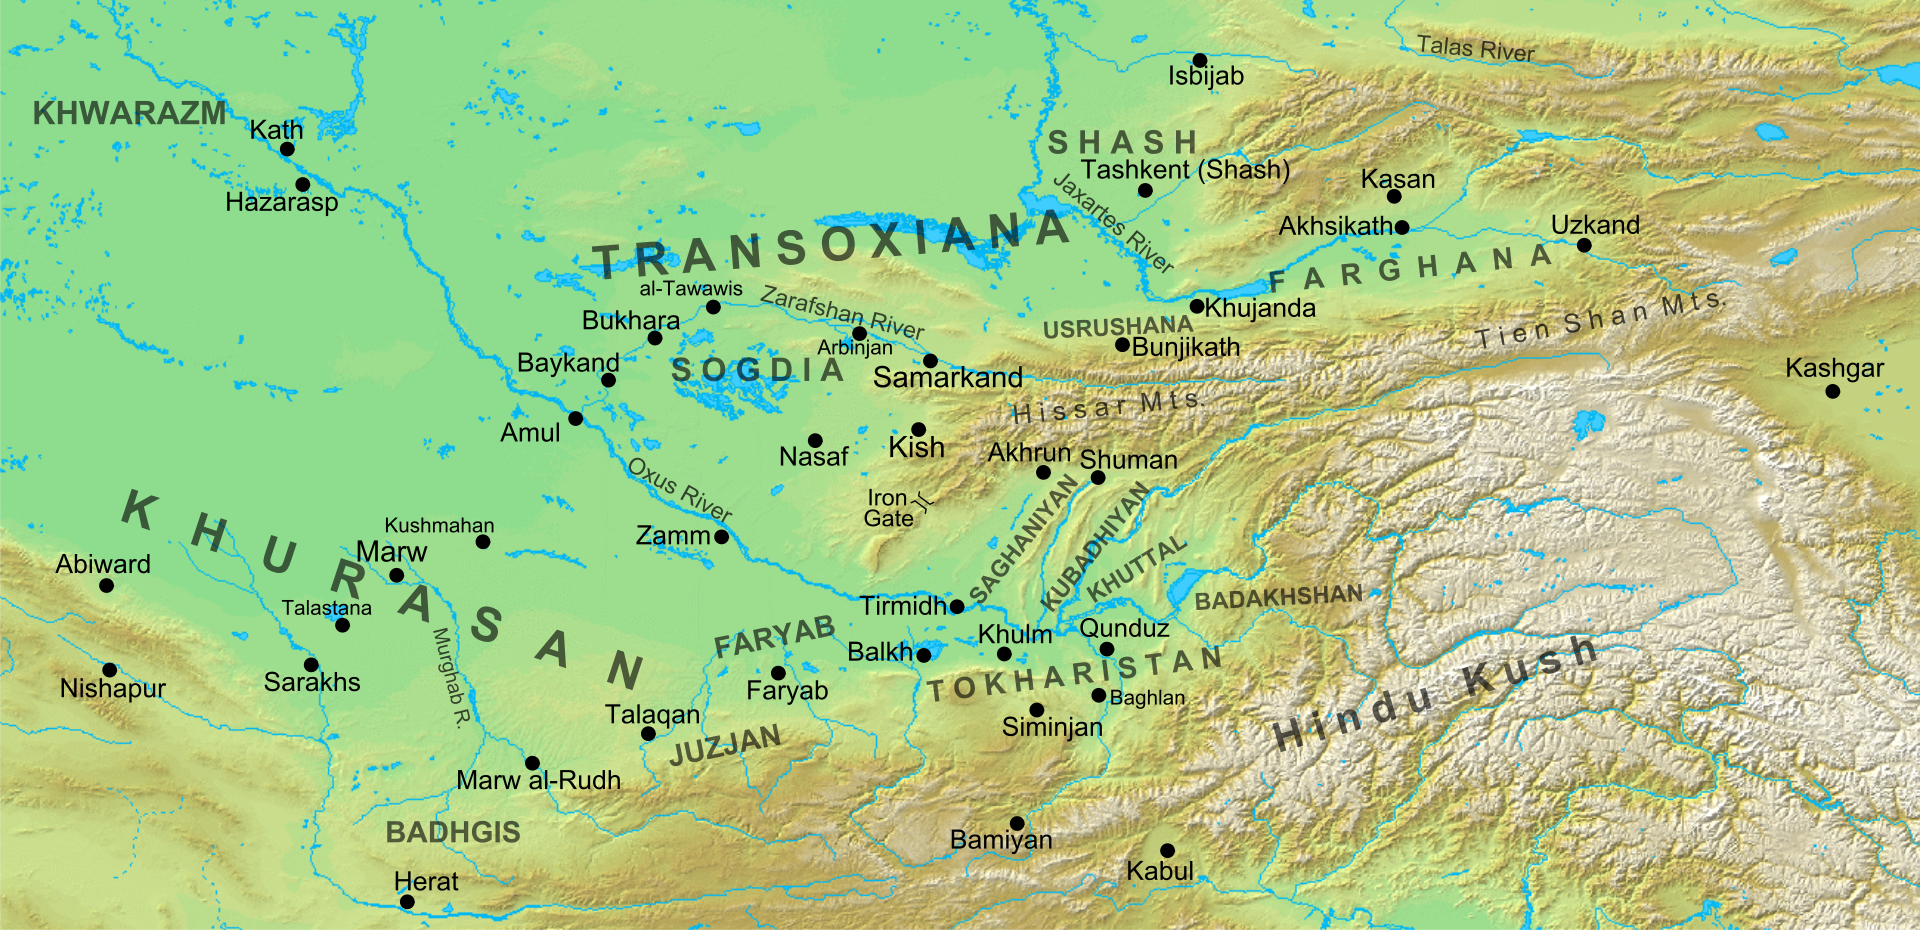 Region of Transoxiana